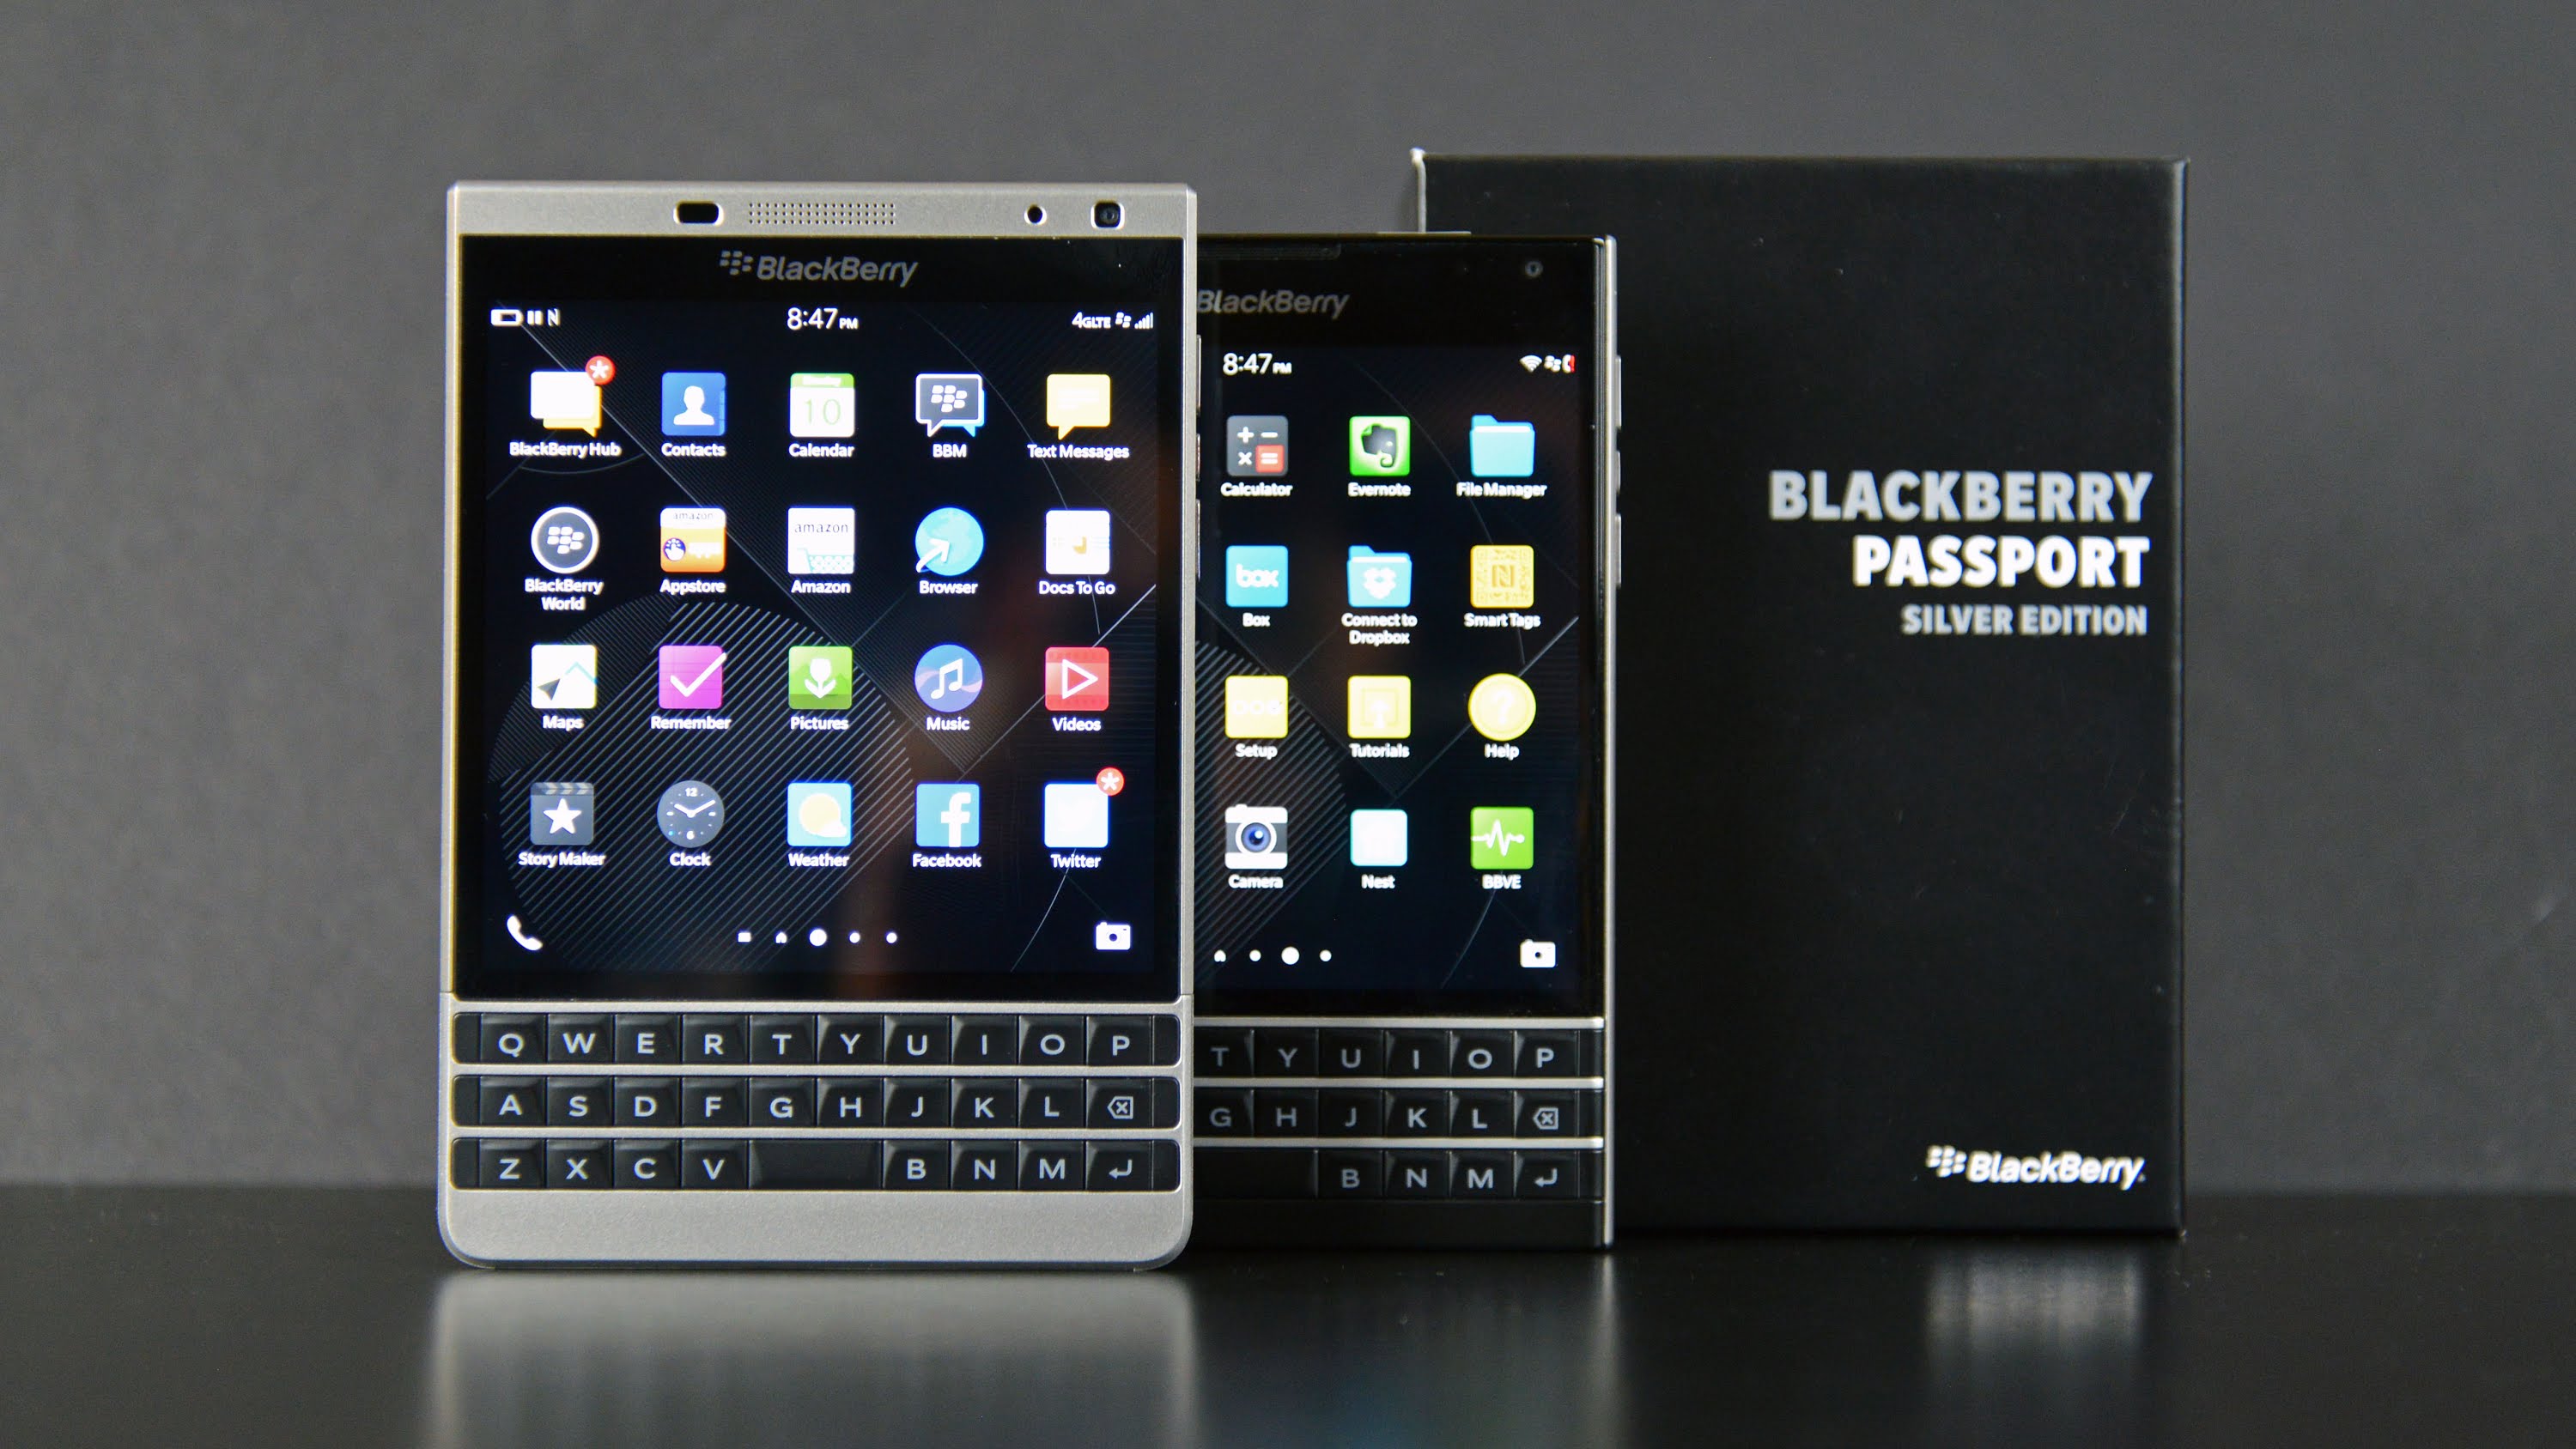 Tìm Hiểu Về Blackberry Passport Silver Edition Là Gì?